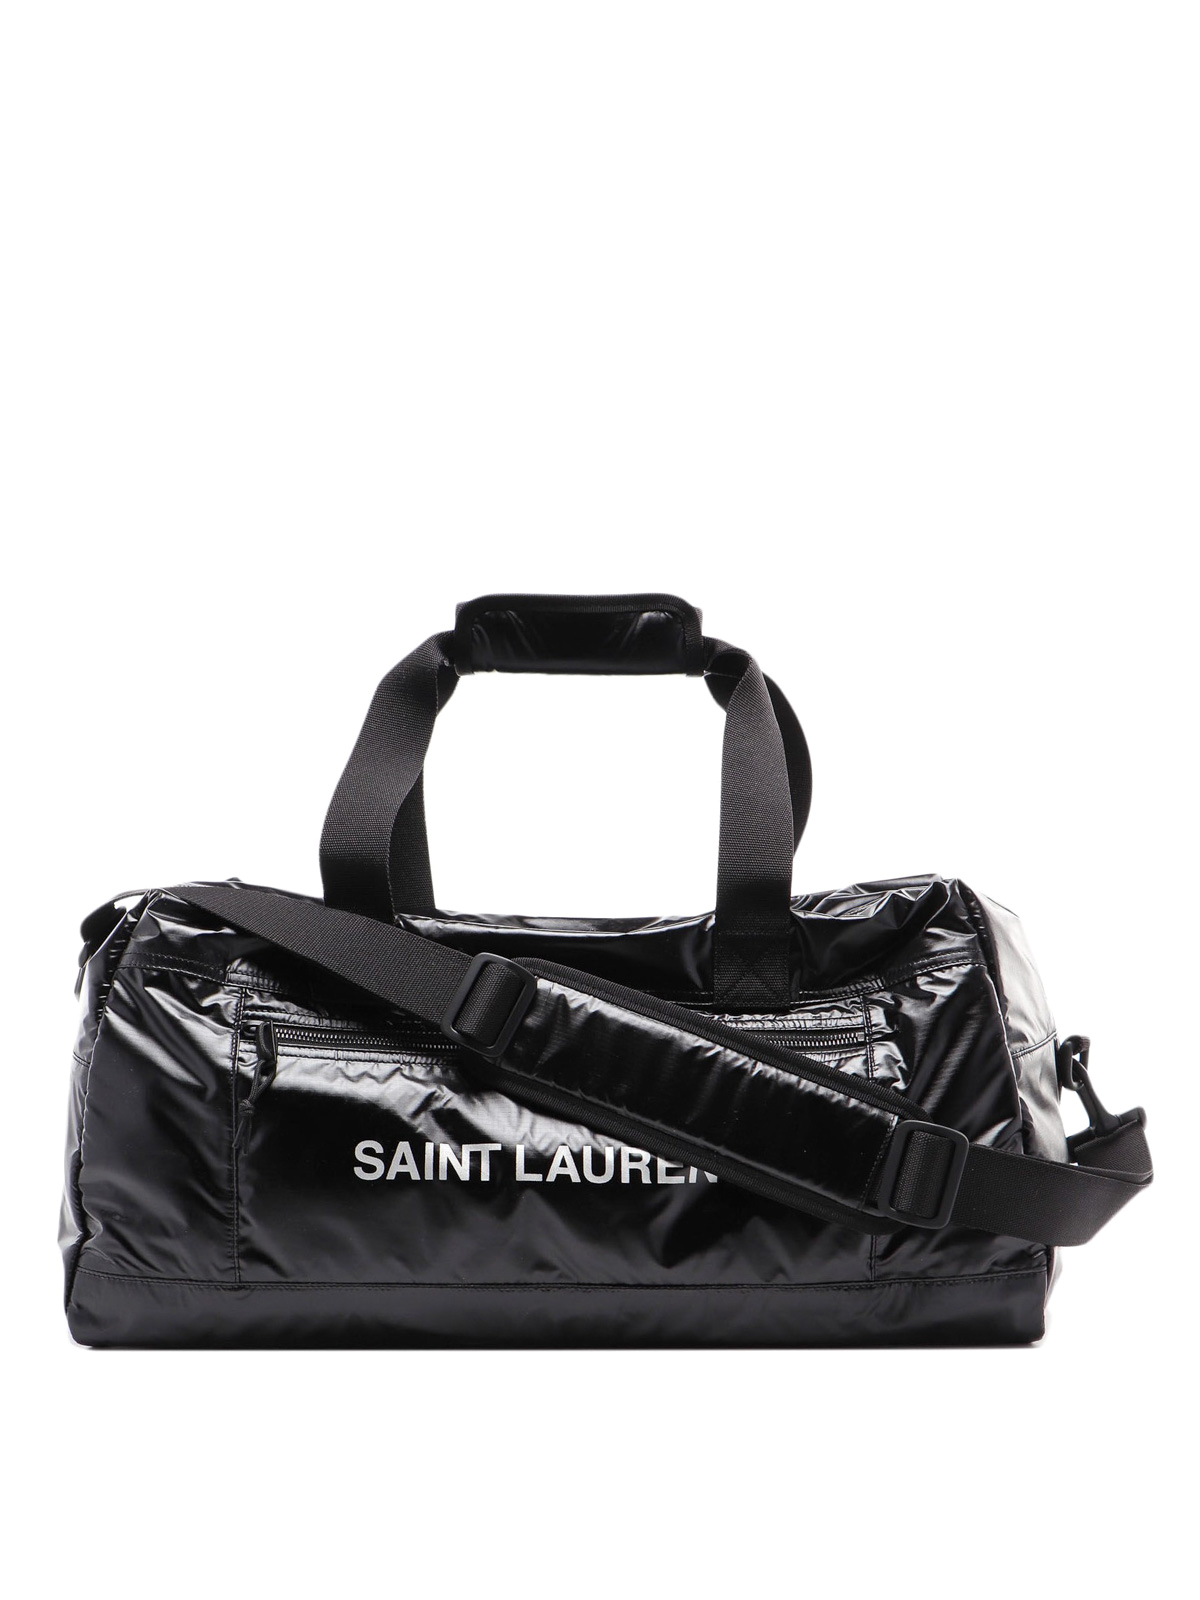 Saint Laurent - Nuxx logo lettering black duffle bag - sport bags ...